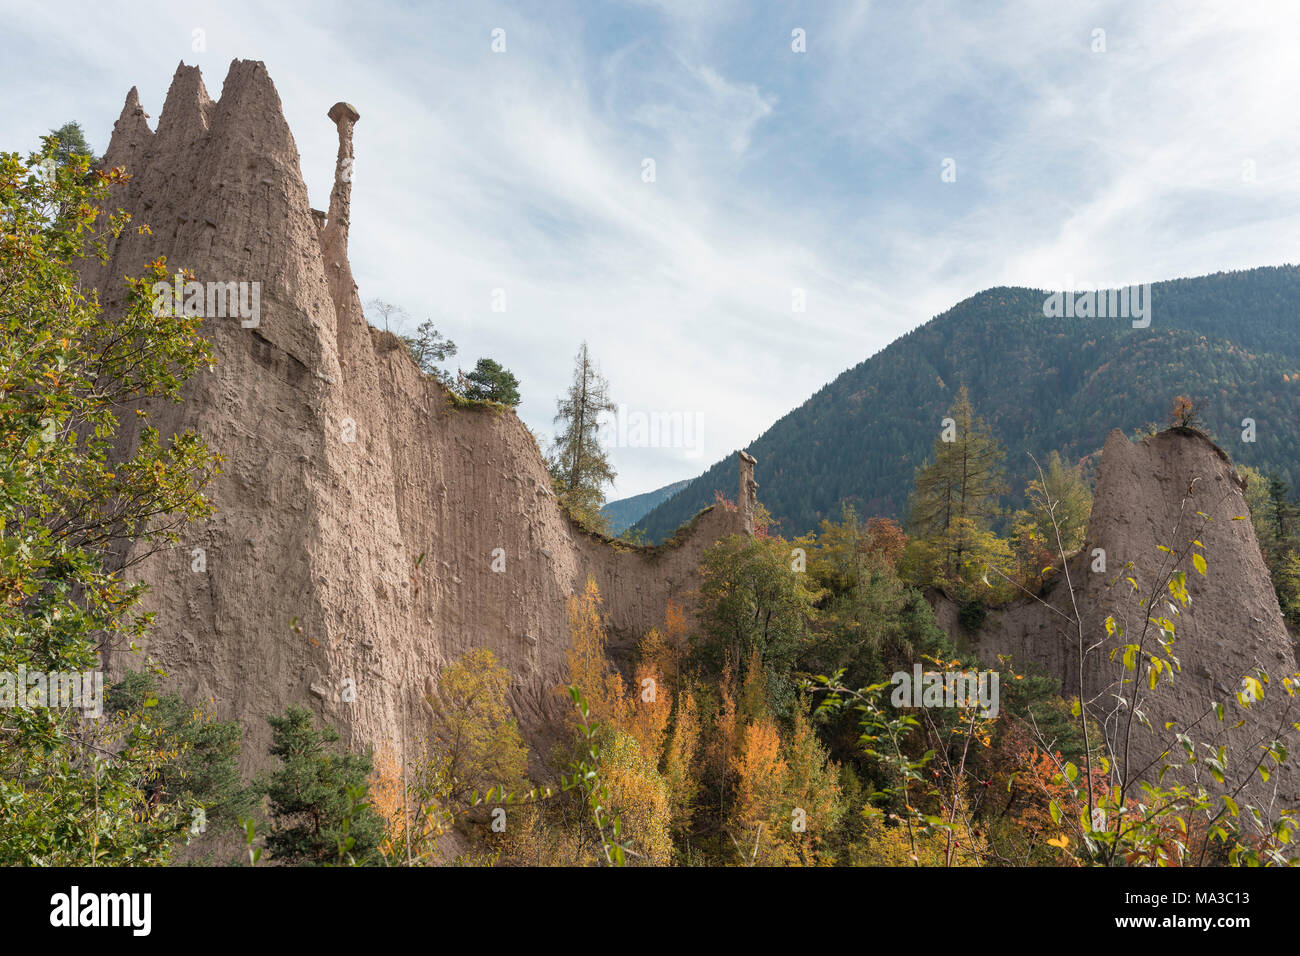 Avis de cembra Valley en automne et pyramides Segonzano, District du Trentin, Italie Banque D'Images